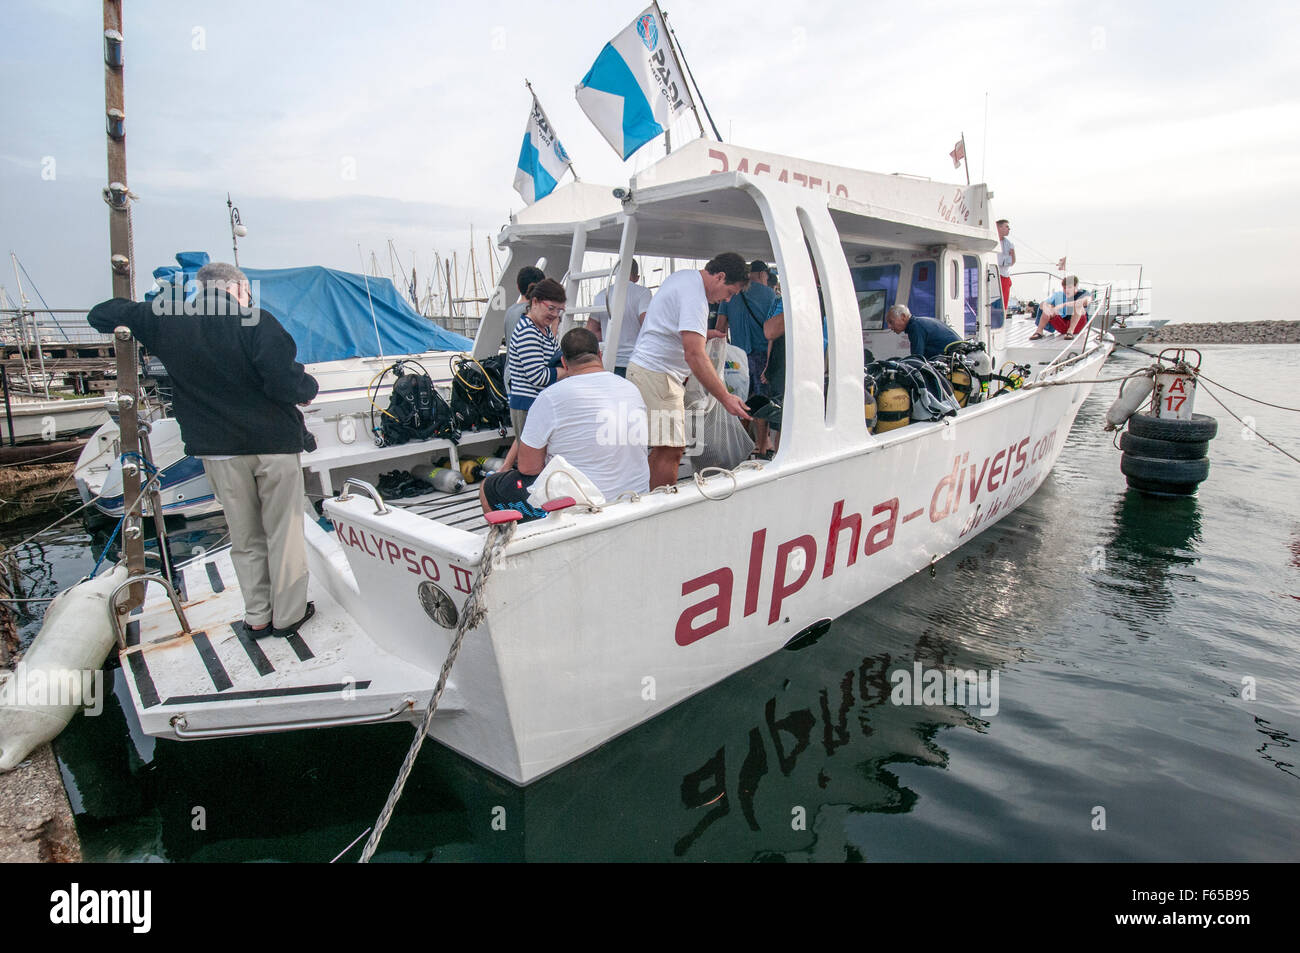 Ein Tauchclub in Larnaca, Zypern. Taucher bereiten ihre Ausrüstung auf dem Tauchboot vor seiner Abreise nach Meer Stockfoto